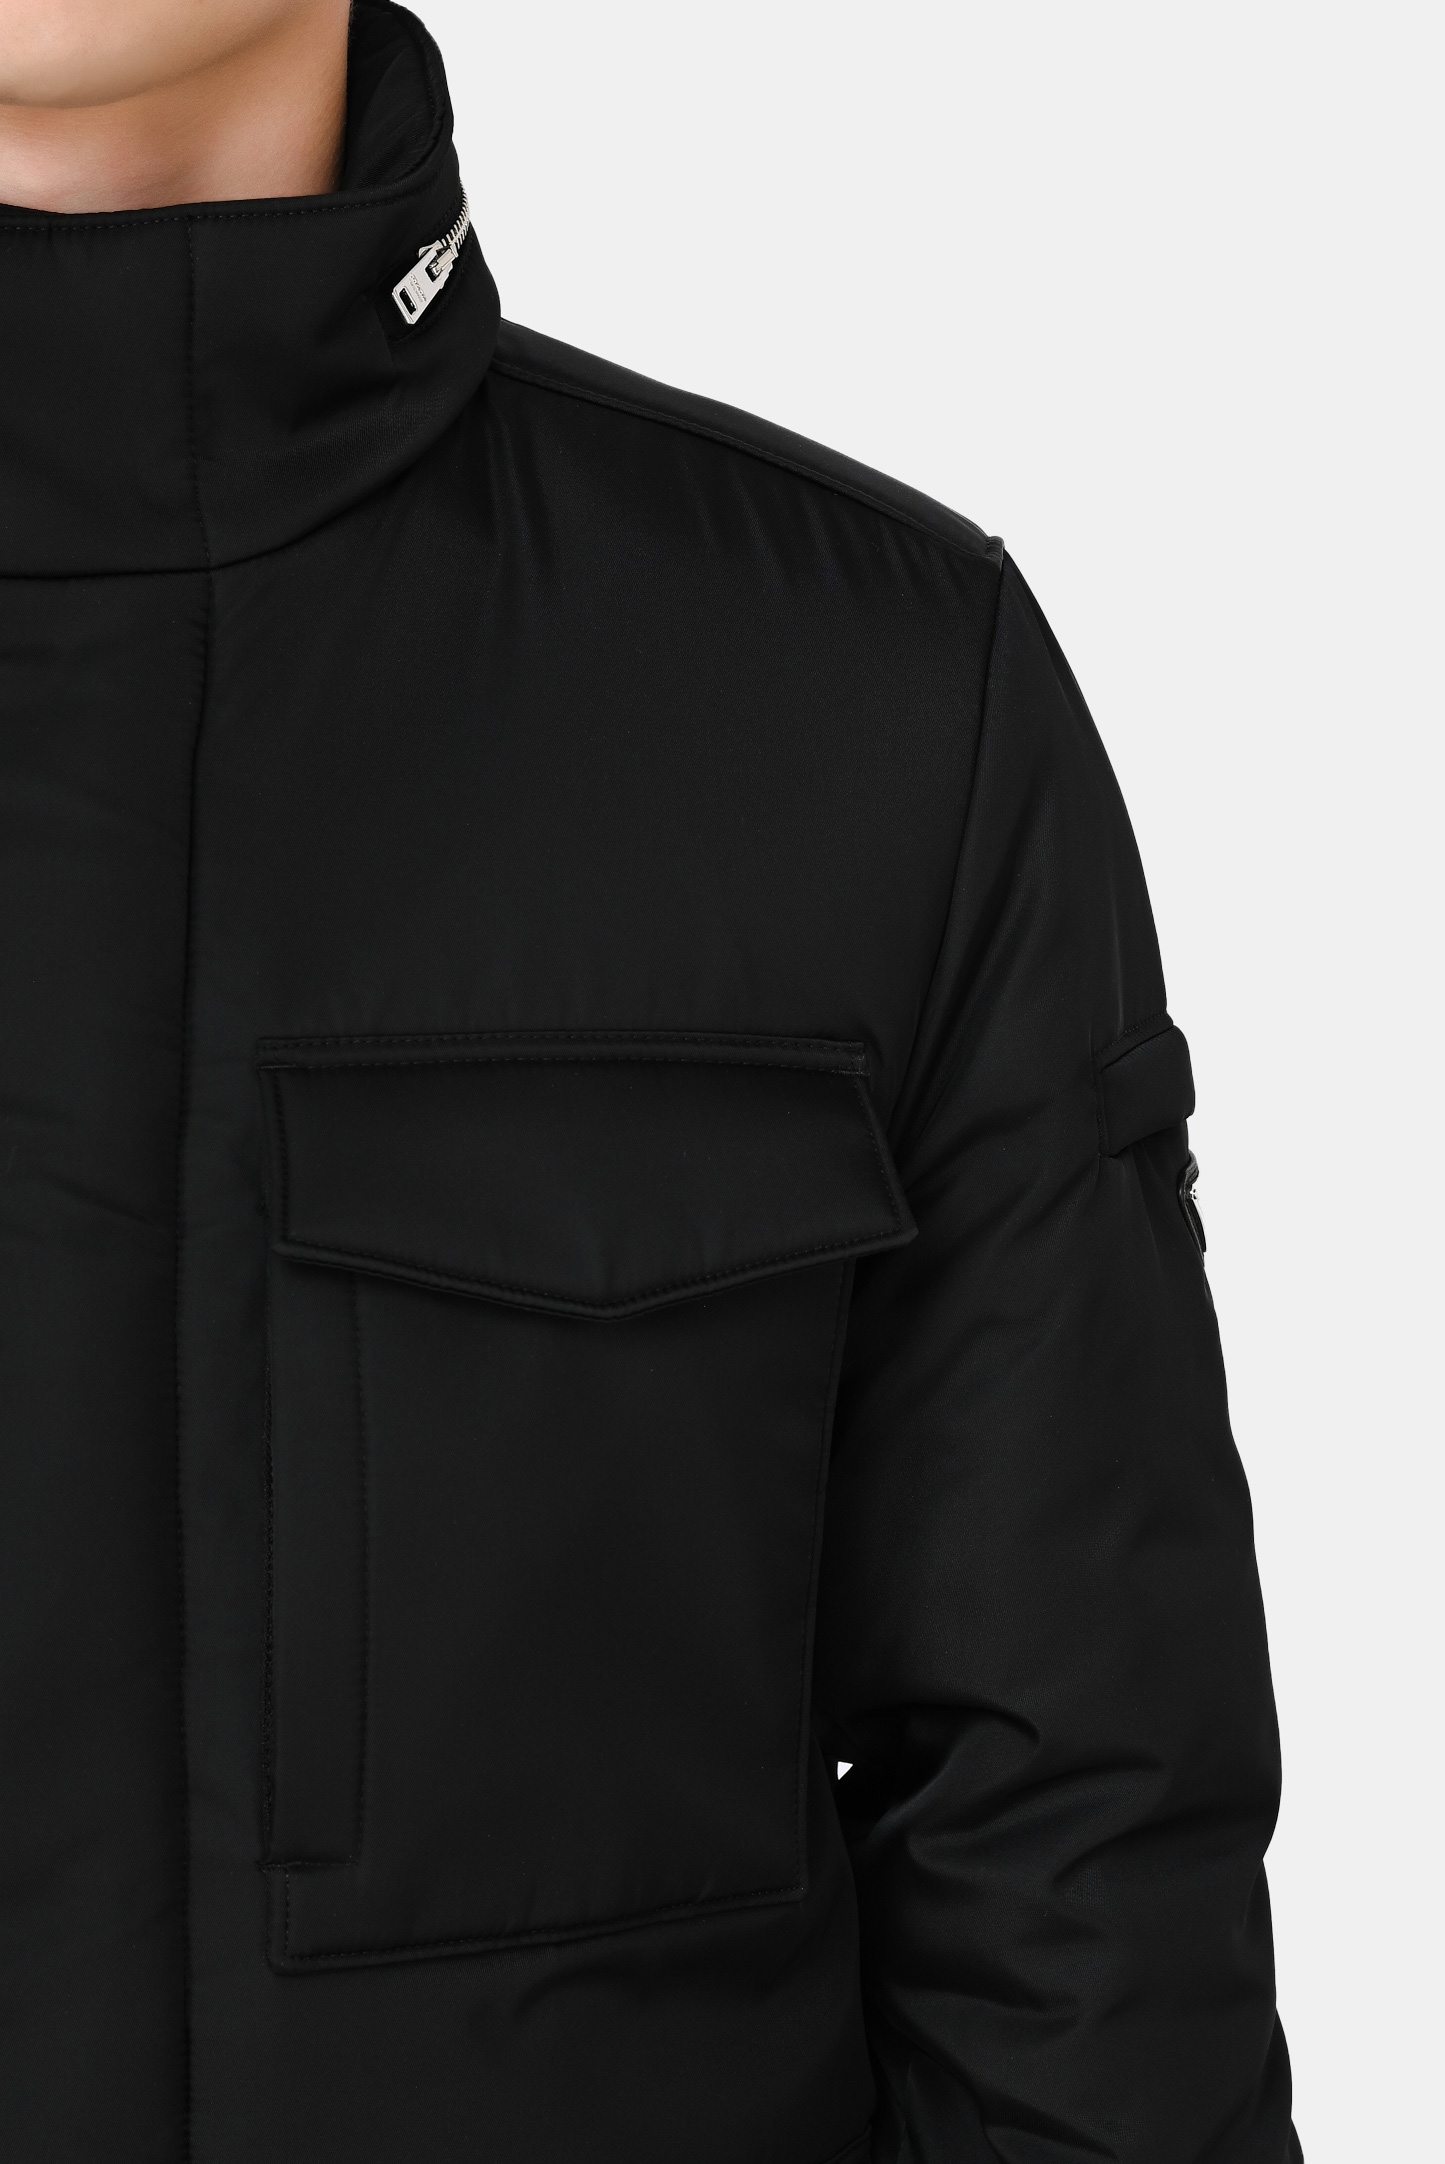 Куртка PRADA SGB784 1WQ8, цвет: Черный, Мужской